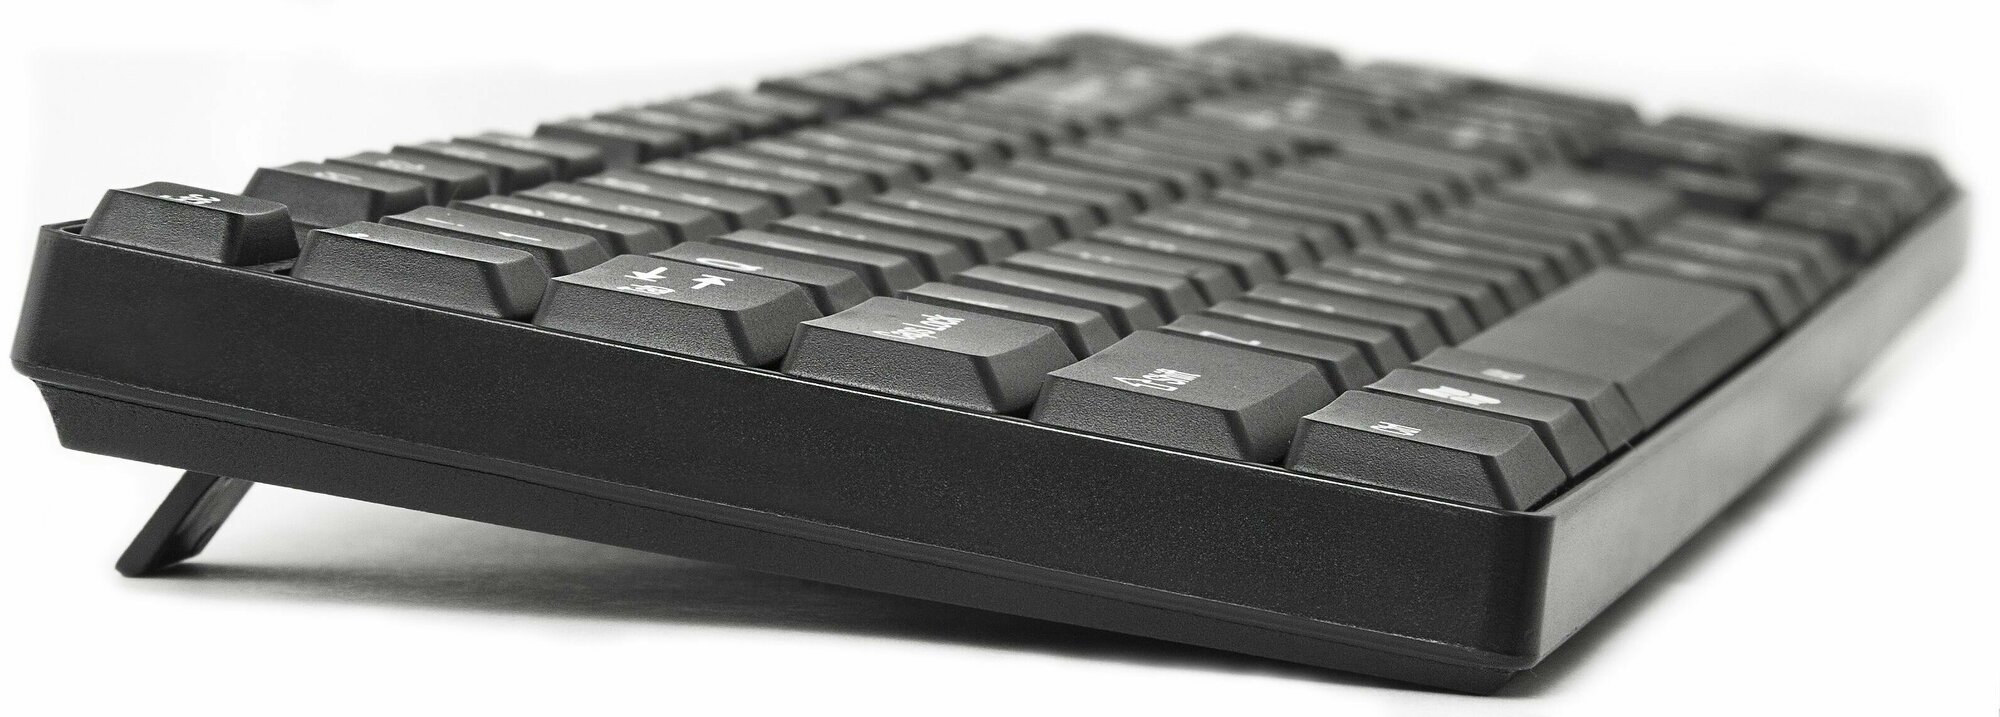 Клавиатура для компьютера проводная Defender Accent SB-720 RU влагоустойчивая компактная